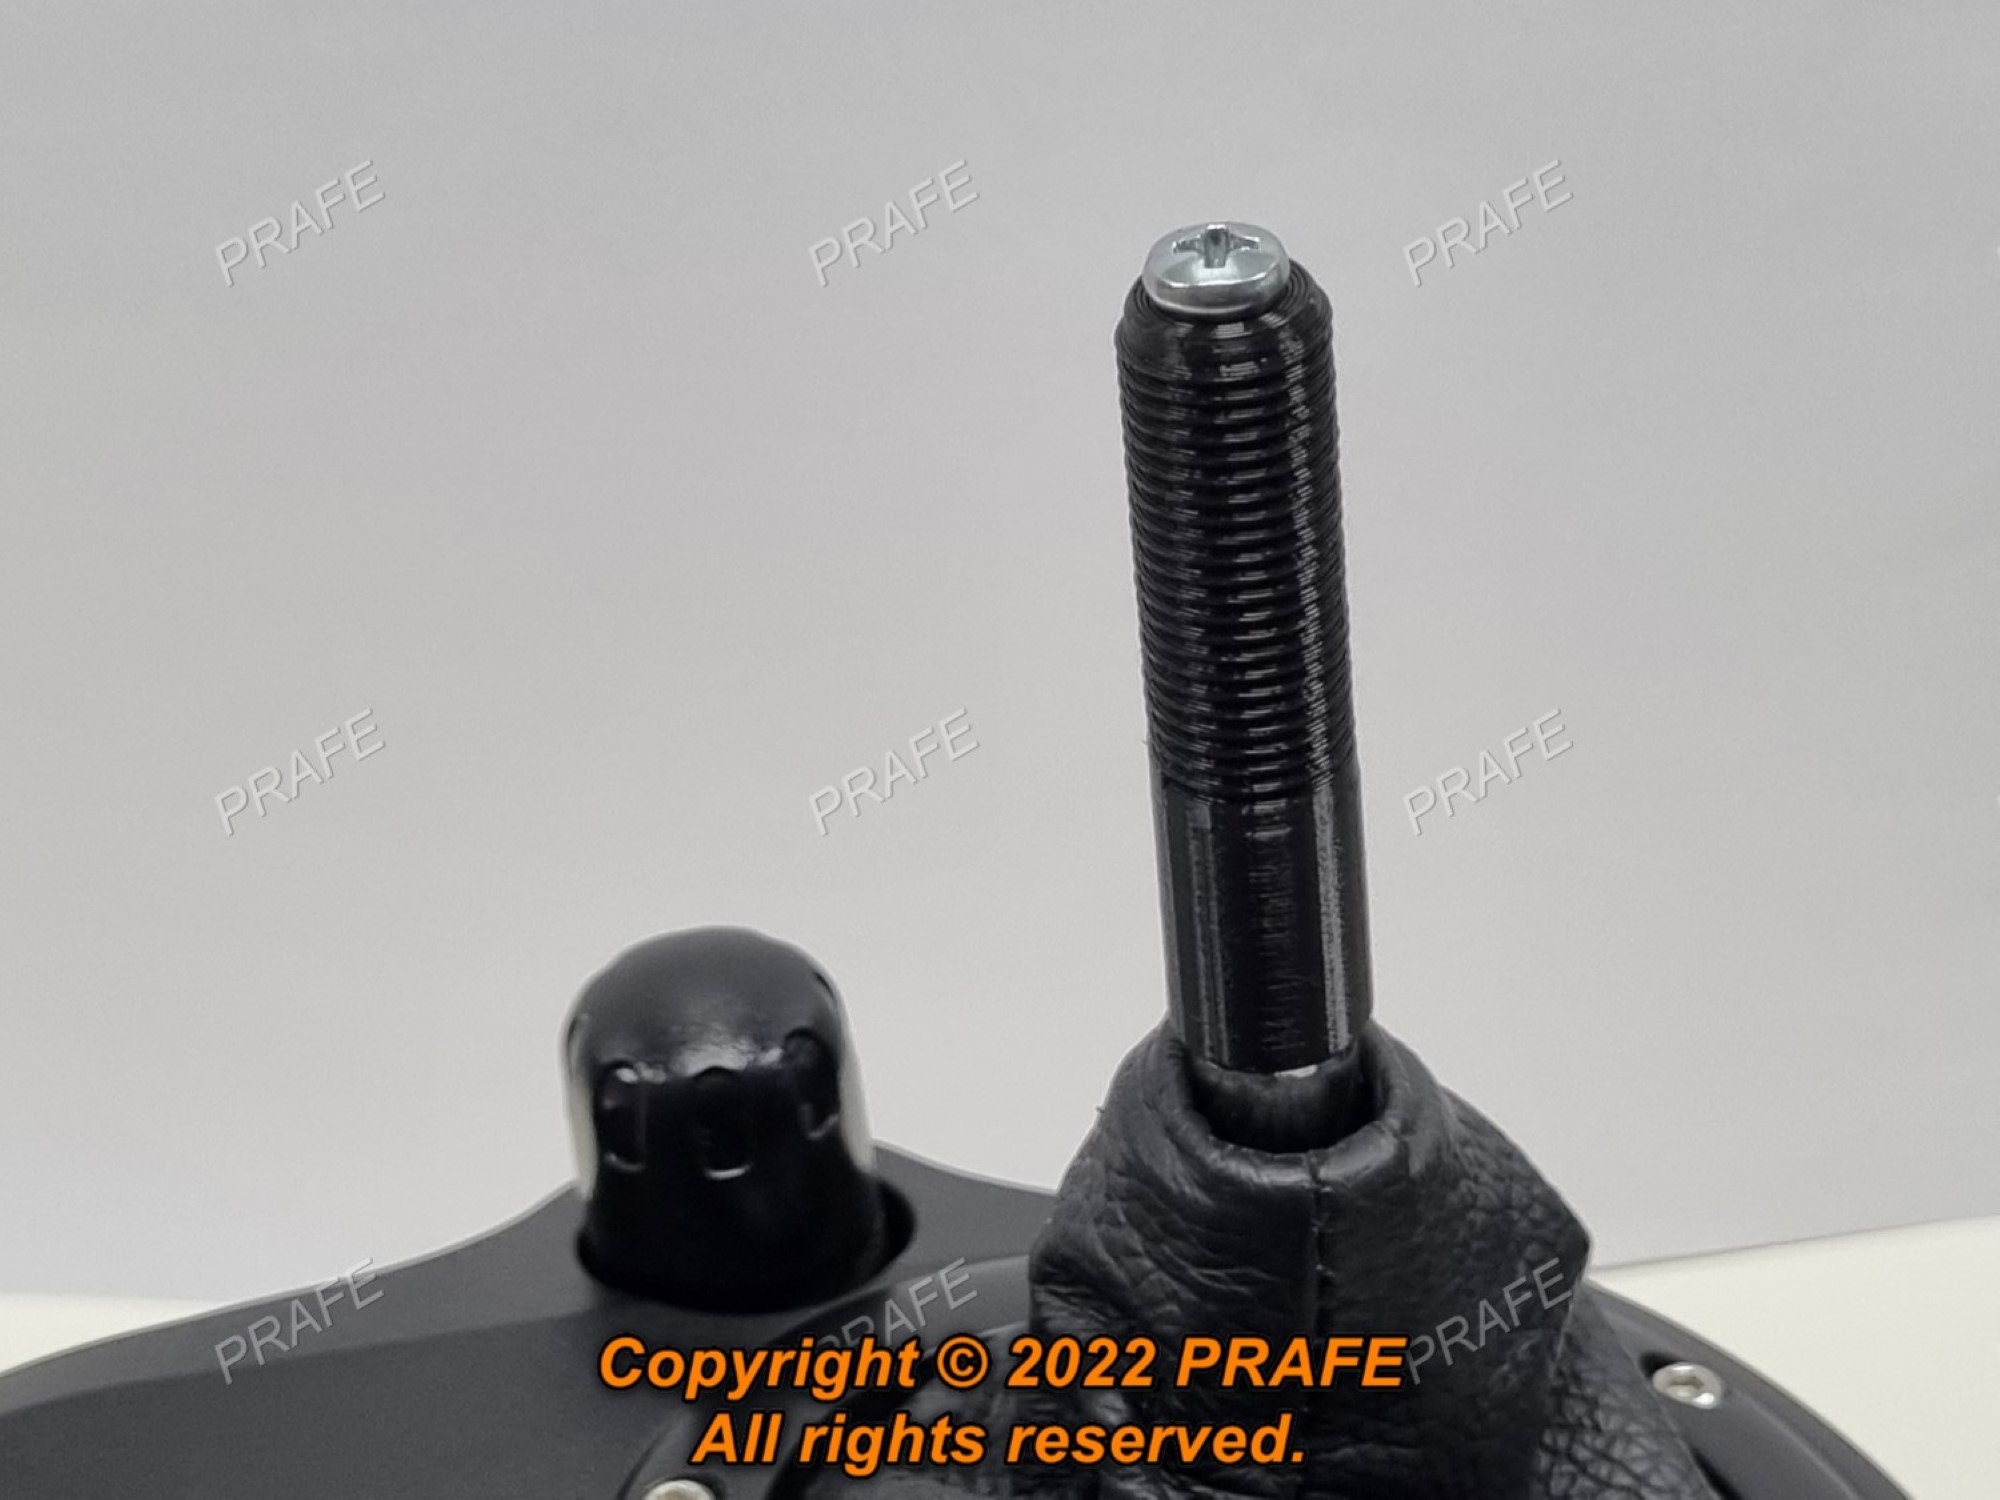 Reklame Praktisk ironi Logitech Shifter Knob Adapter Mod for G25 G27 G29 G920 G923 - Etsy